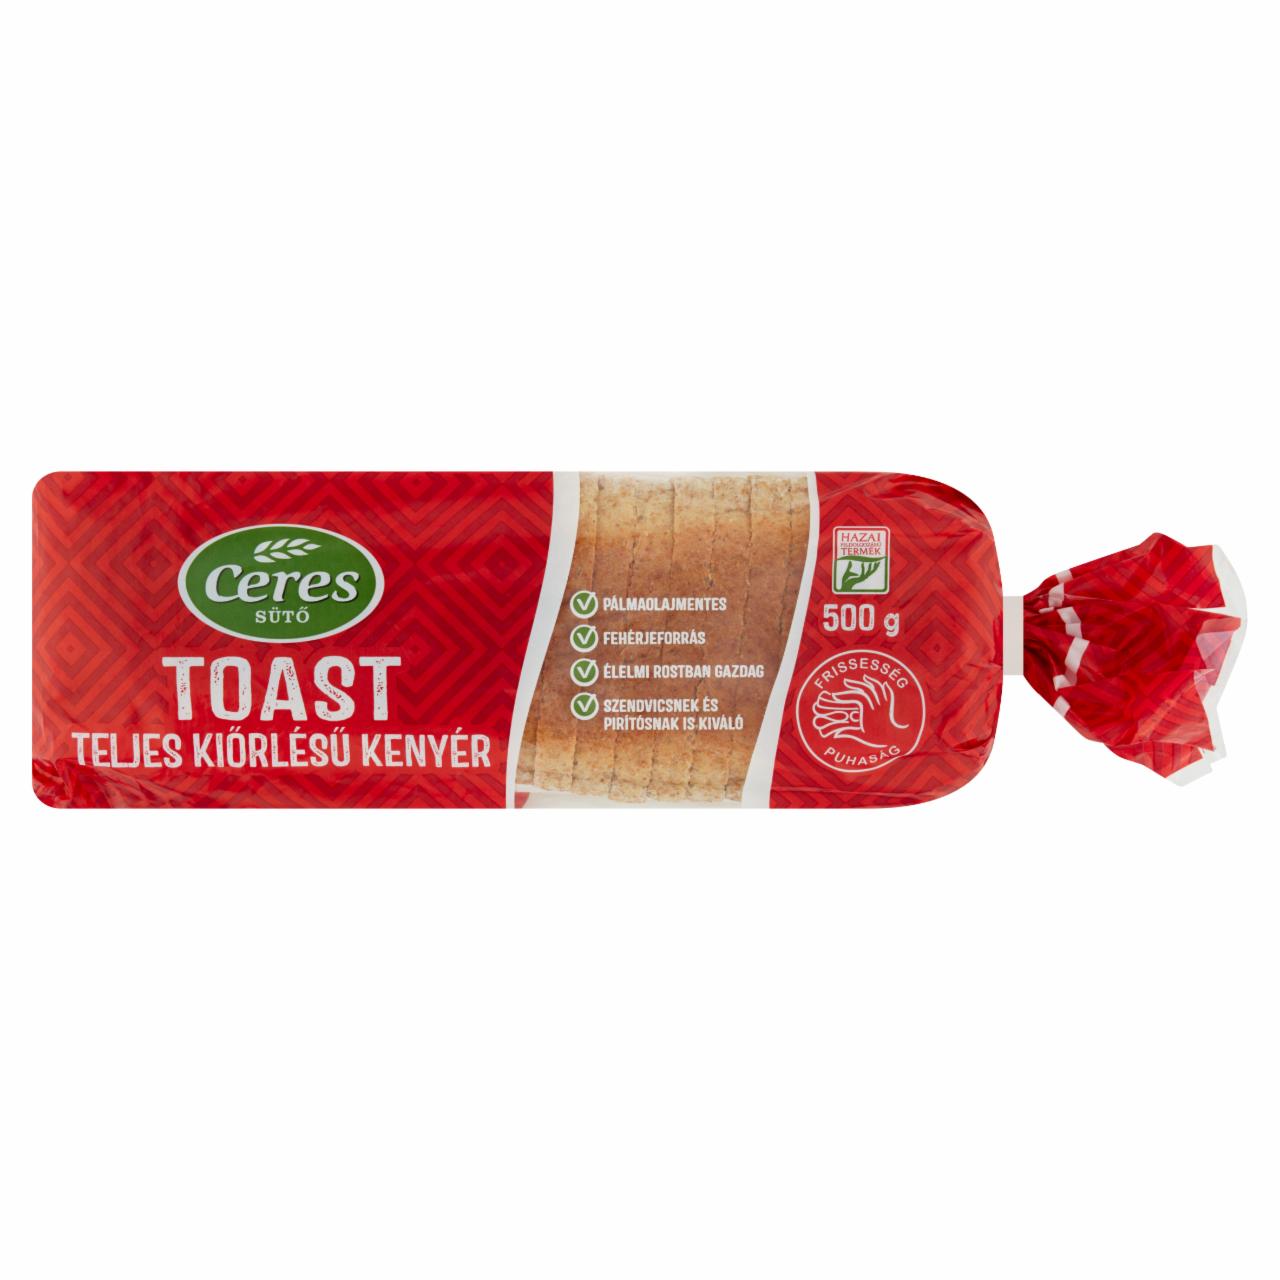 Képek - Ceres Toast teljes kiőrlésű kenyér 500 g